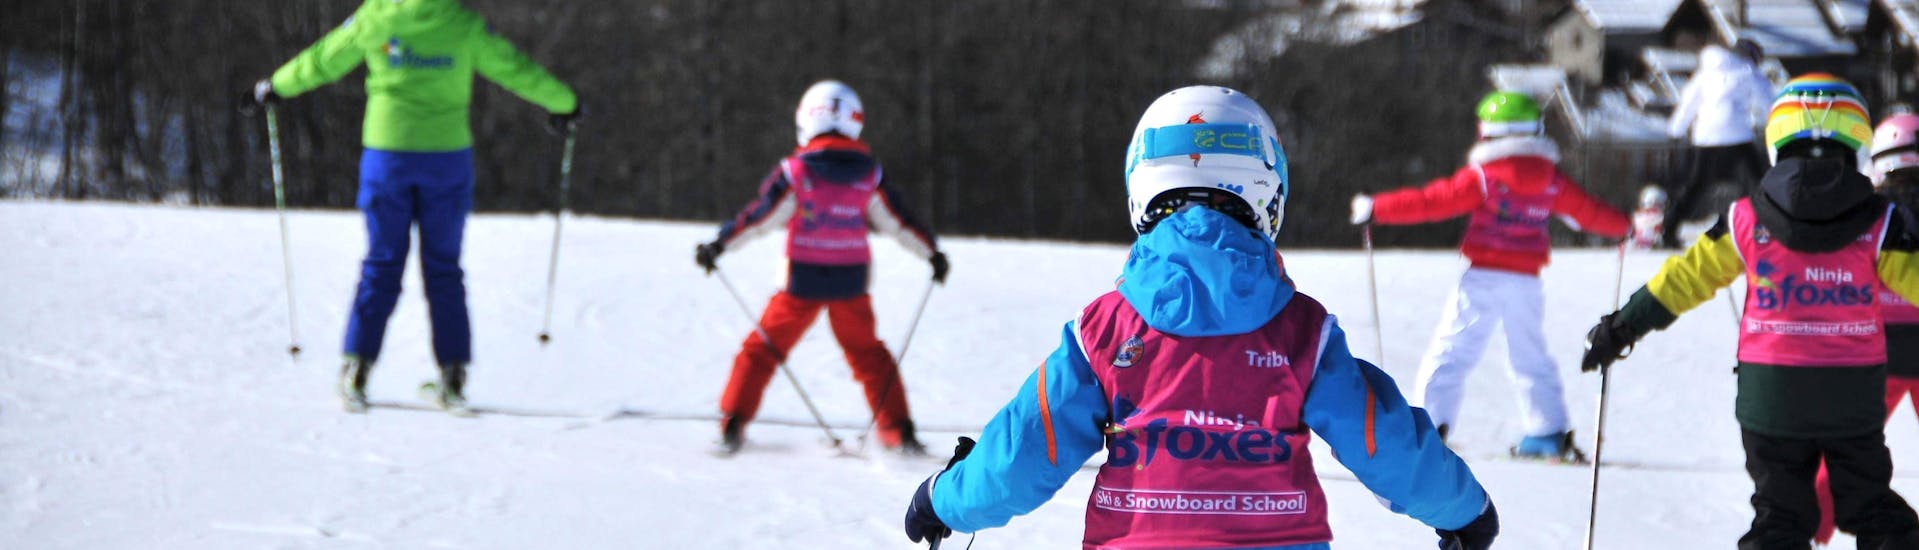 I bambini imparano a sciare nelle Lezioni di sci per bambini (4-12 anni) - Tutti i livelli organizzati dalla scuola di sci Scuola di Sci B.foxes.